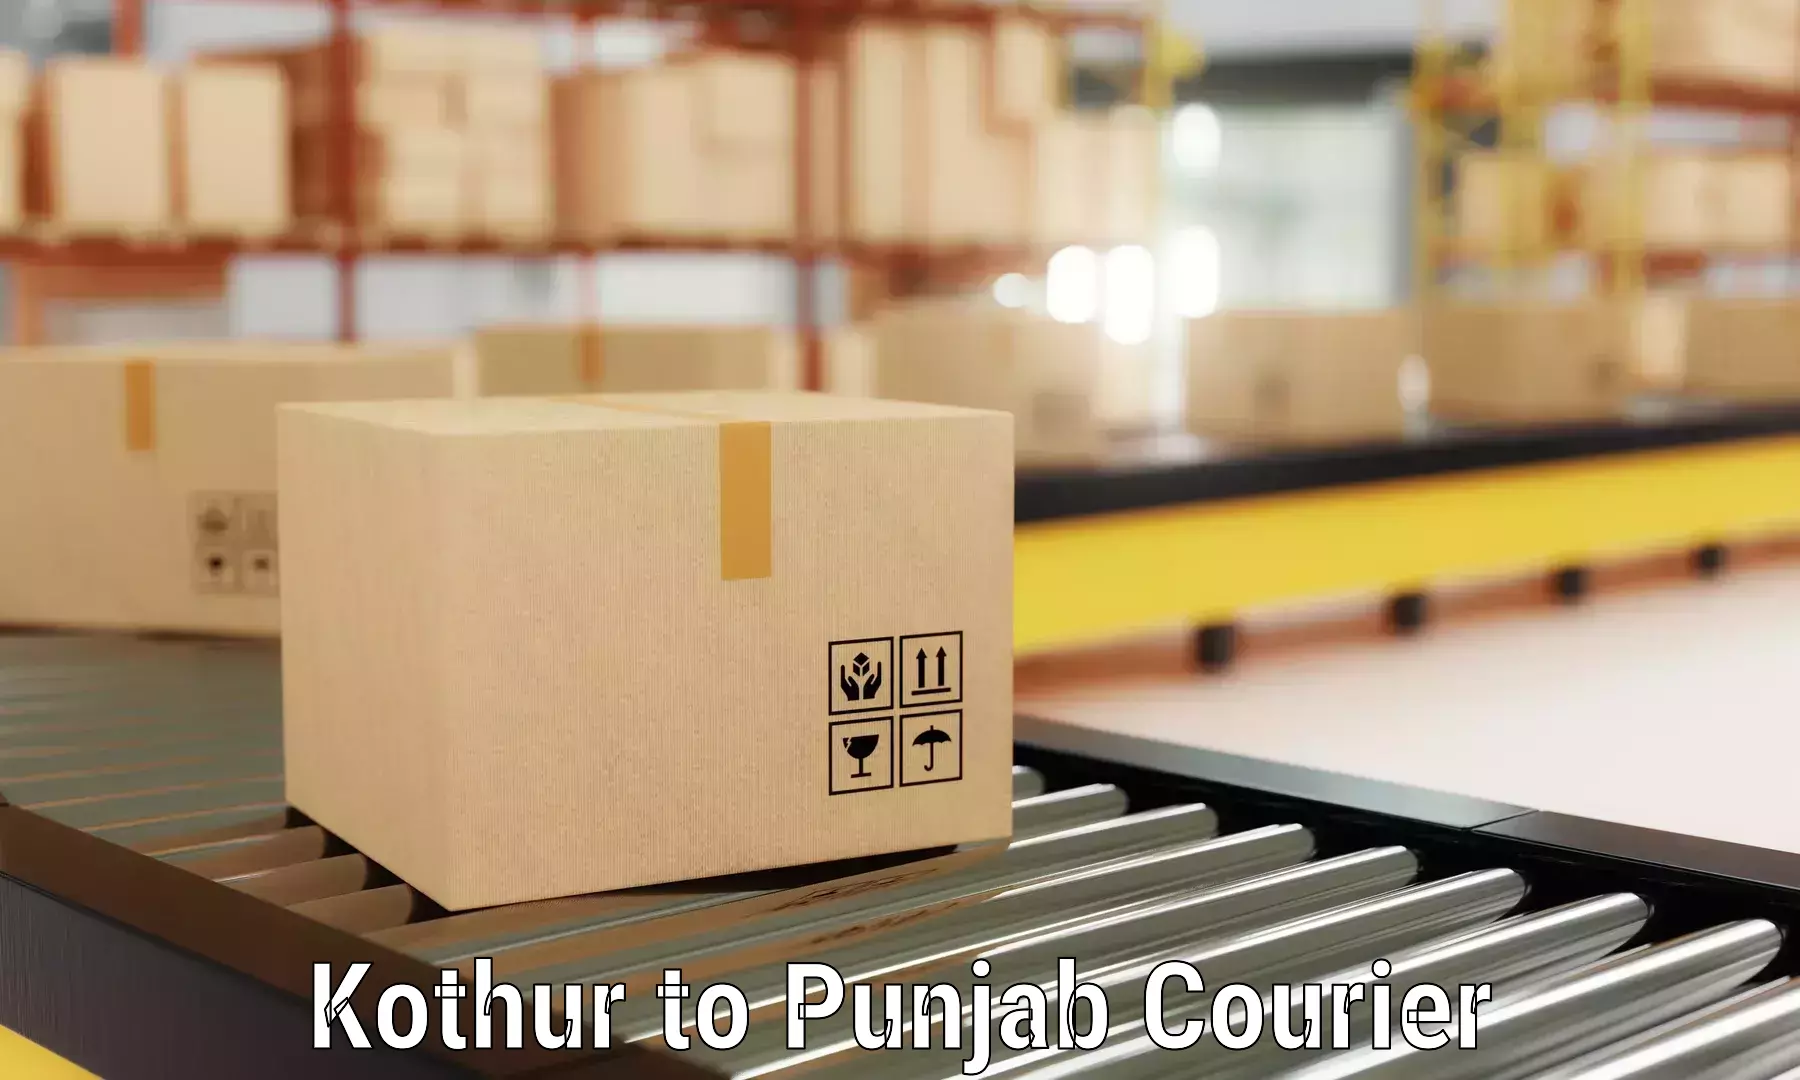 Furniture transport and logistics Kothur to Faridkot